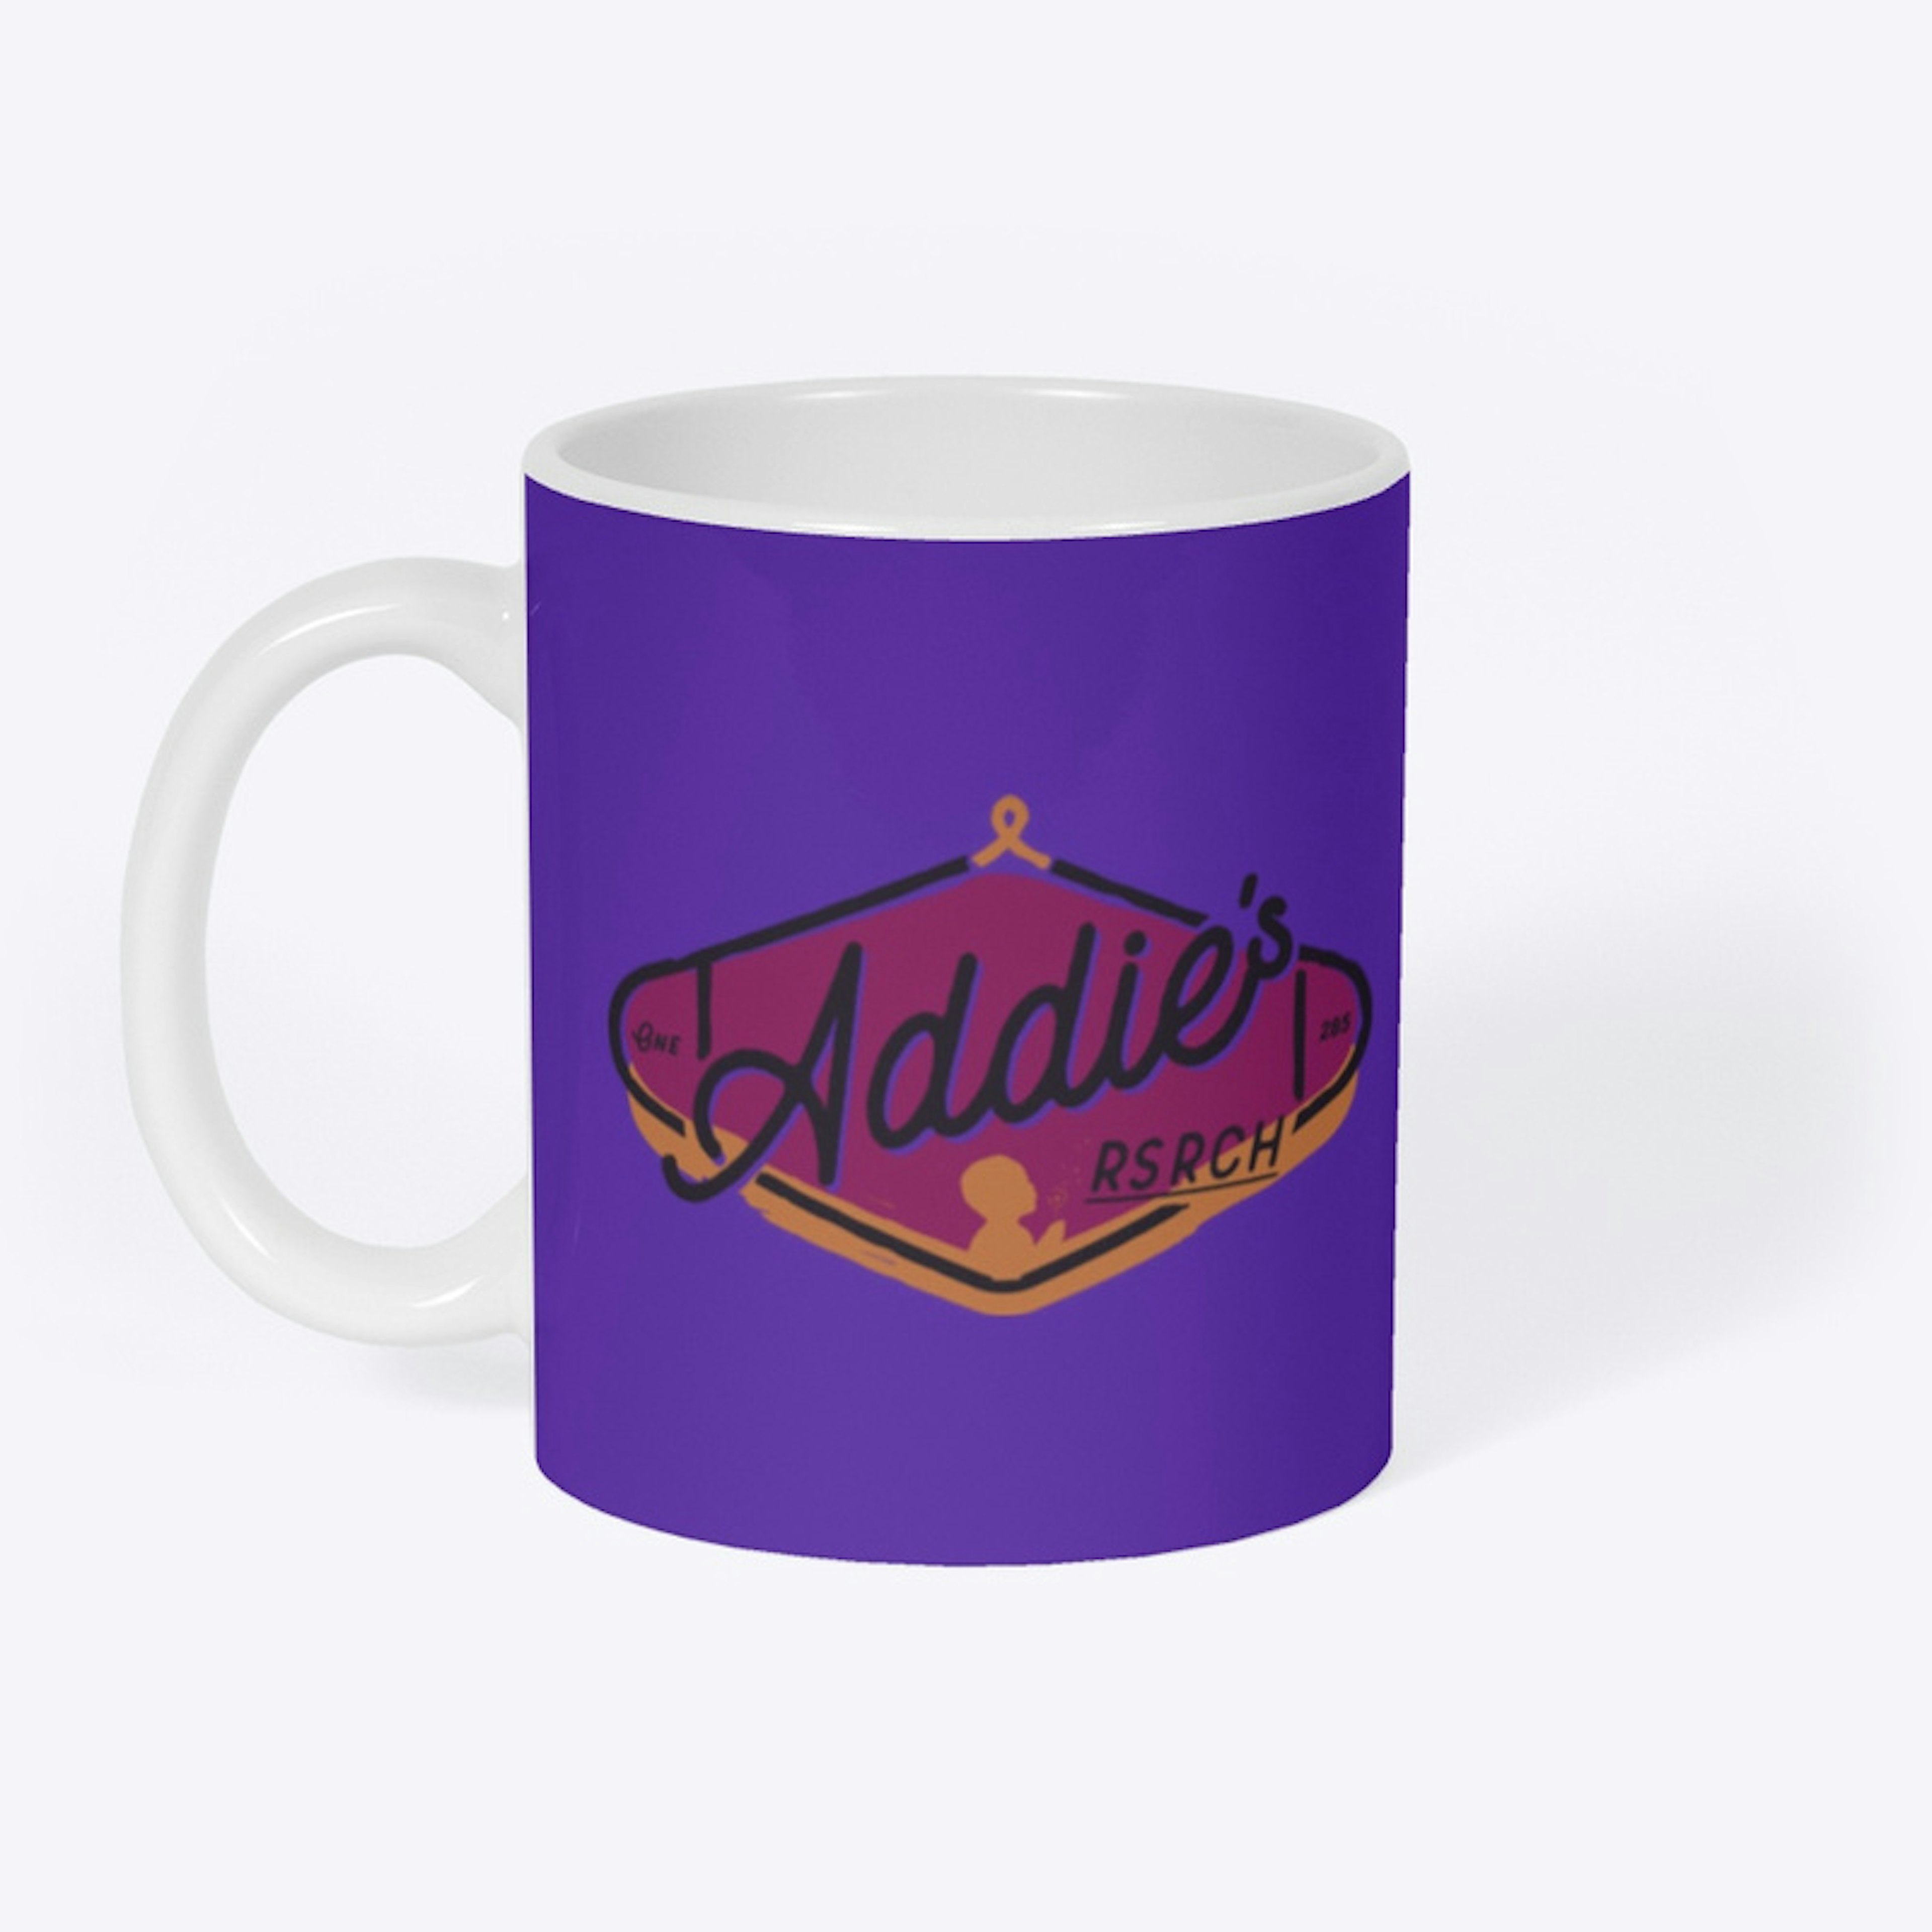 Addie's Research Mug - pink logo